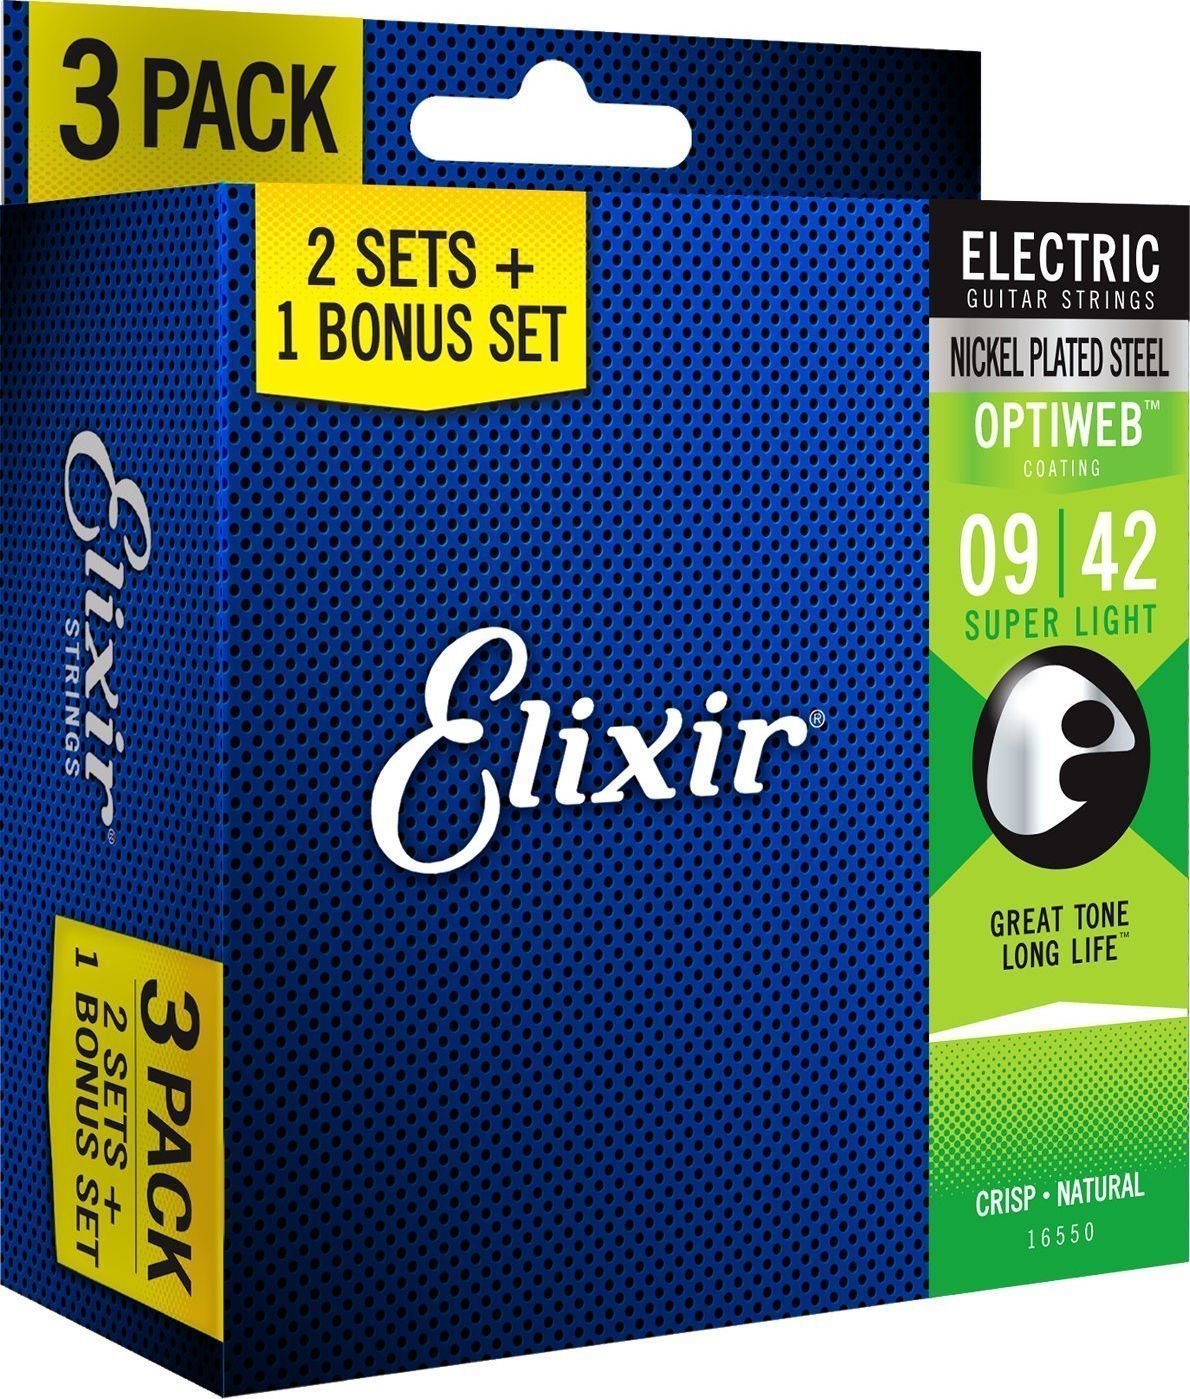 E-guitar strings Elixir 16550 OPTIWEB Coating Super Light 9-42 3-PACK